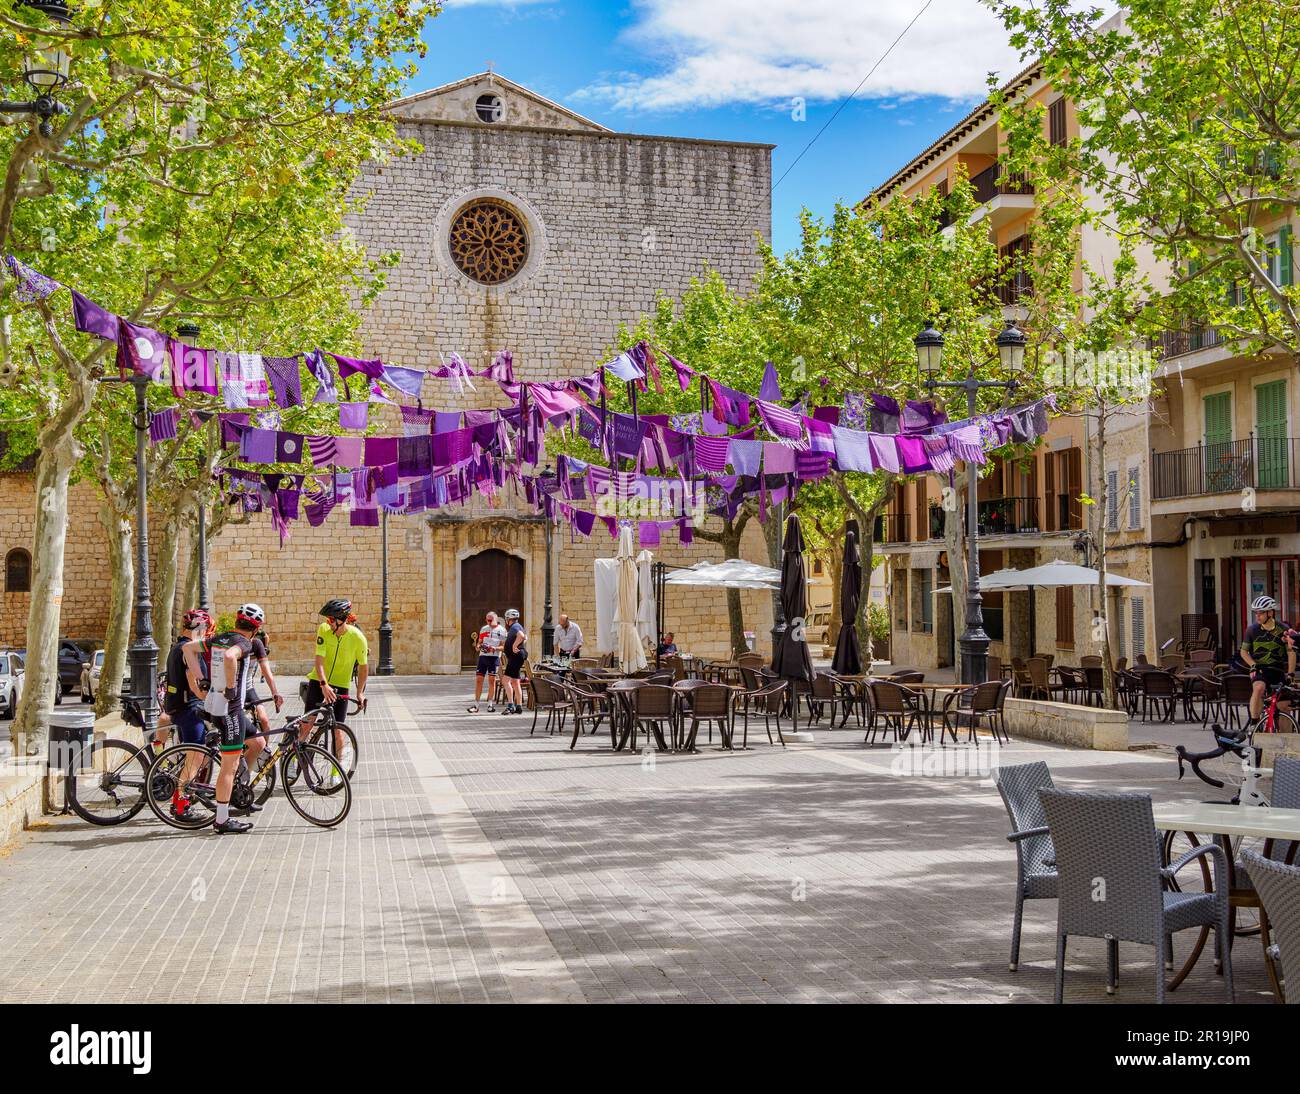 Hauptplatz des Dorfes Alaro in den Tramuntana-Bergen Mallorcas, Spanien, mit lila Flaggen für den Frauentag Stockfoto